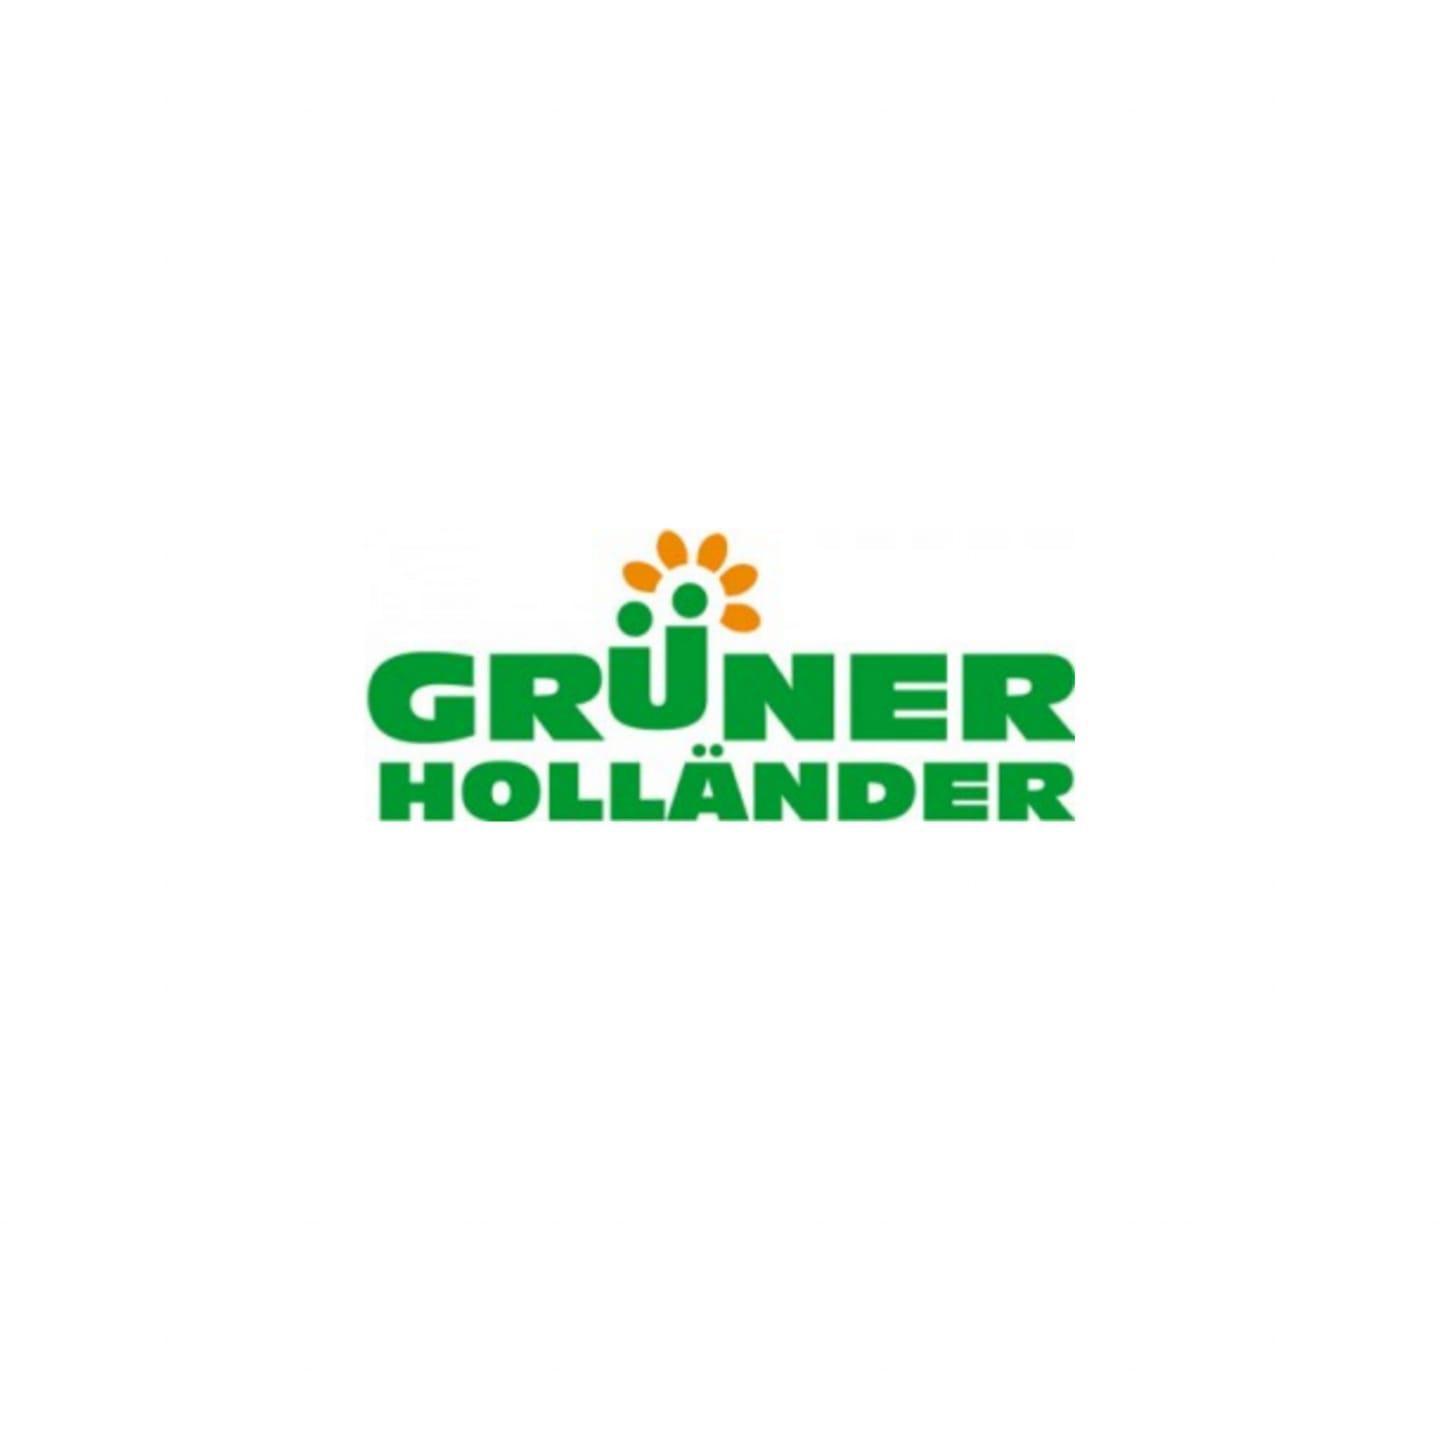 Grüner Holländer Berlin in Berlin - Logo